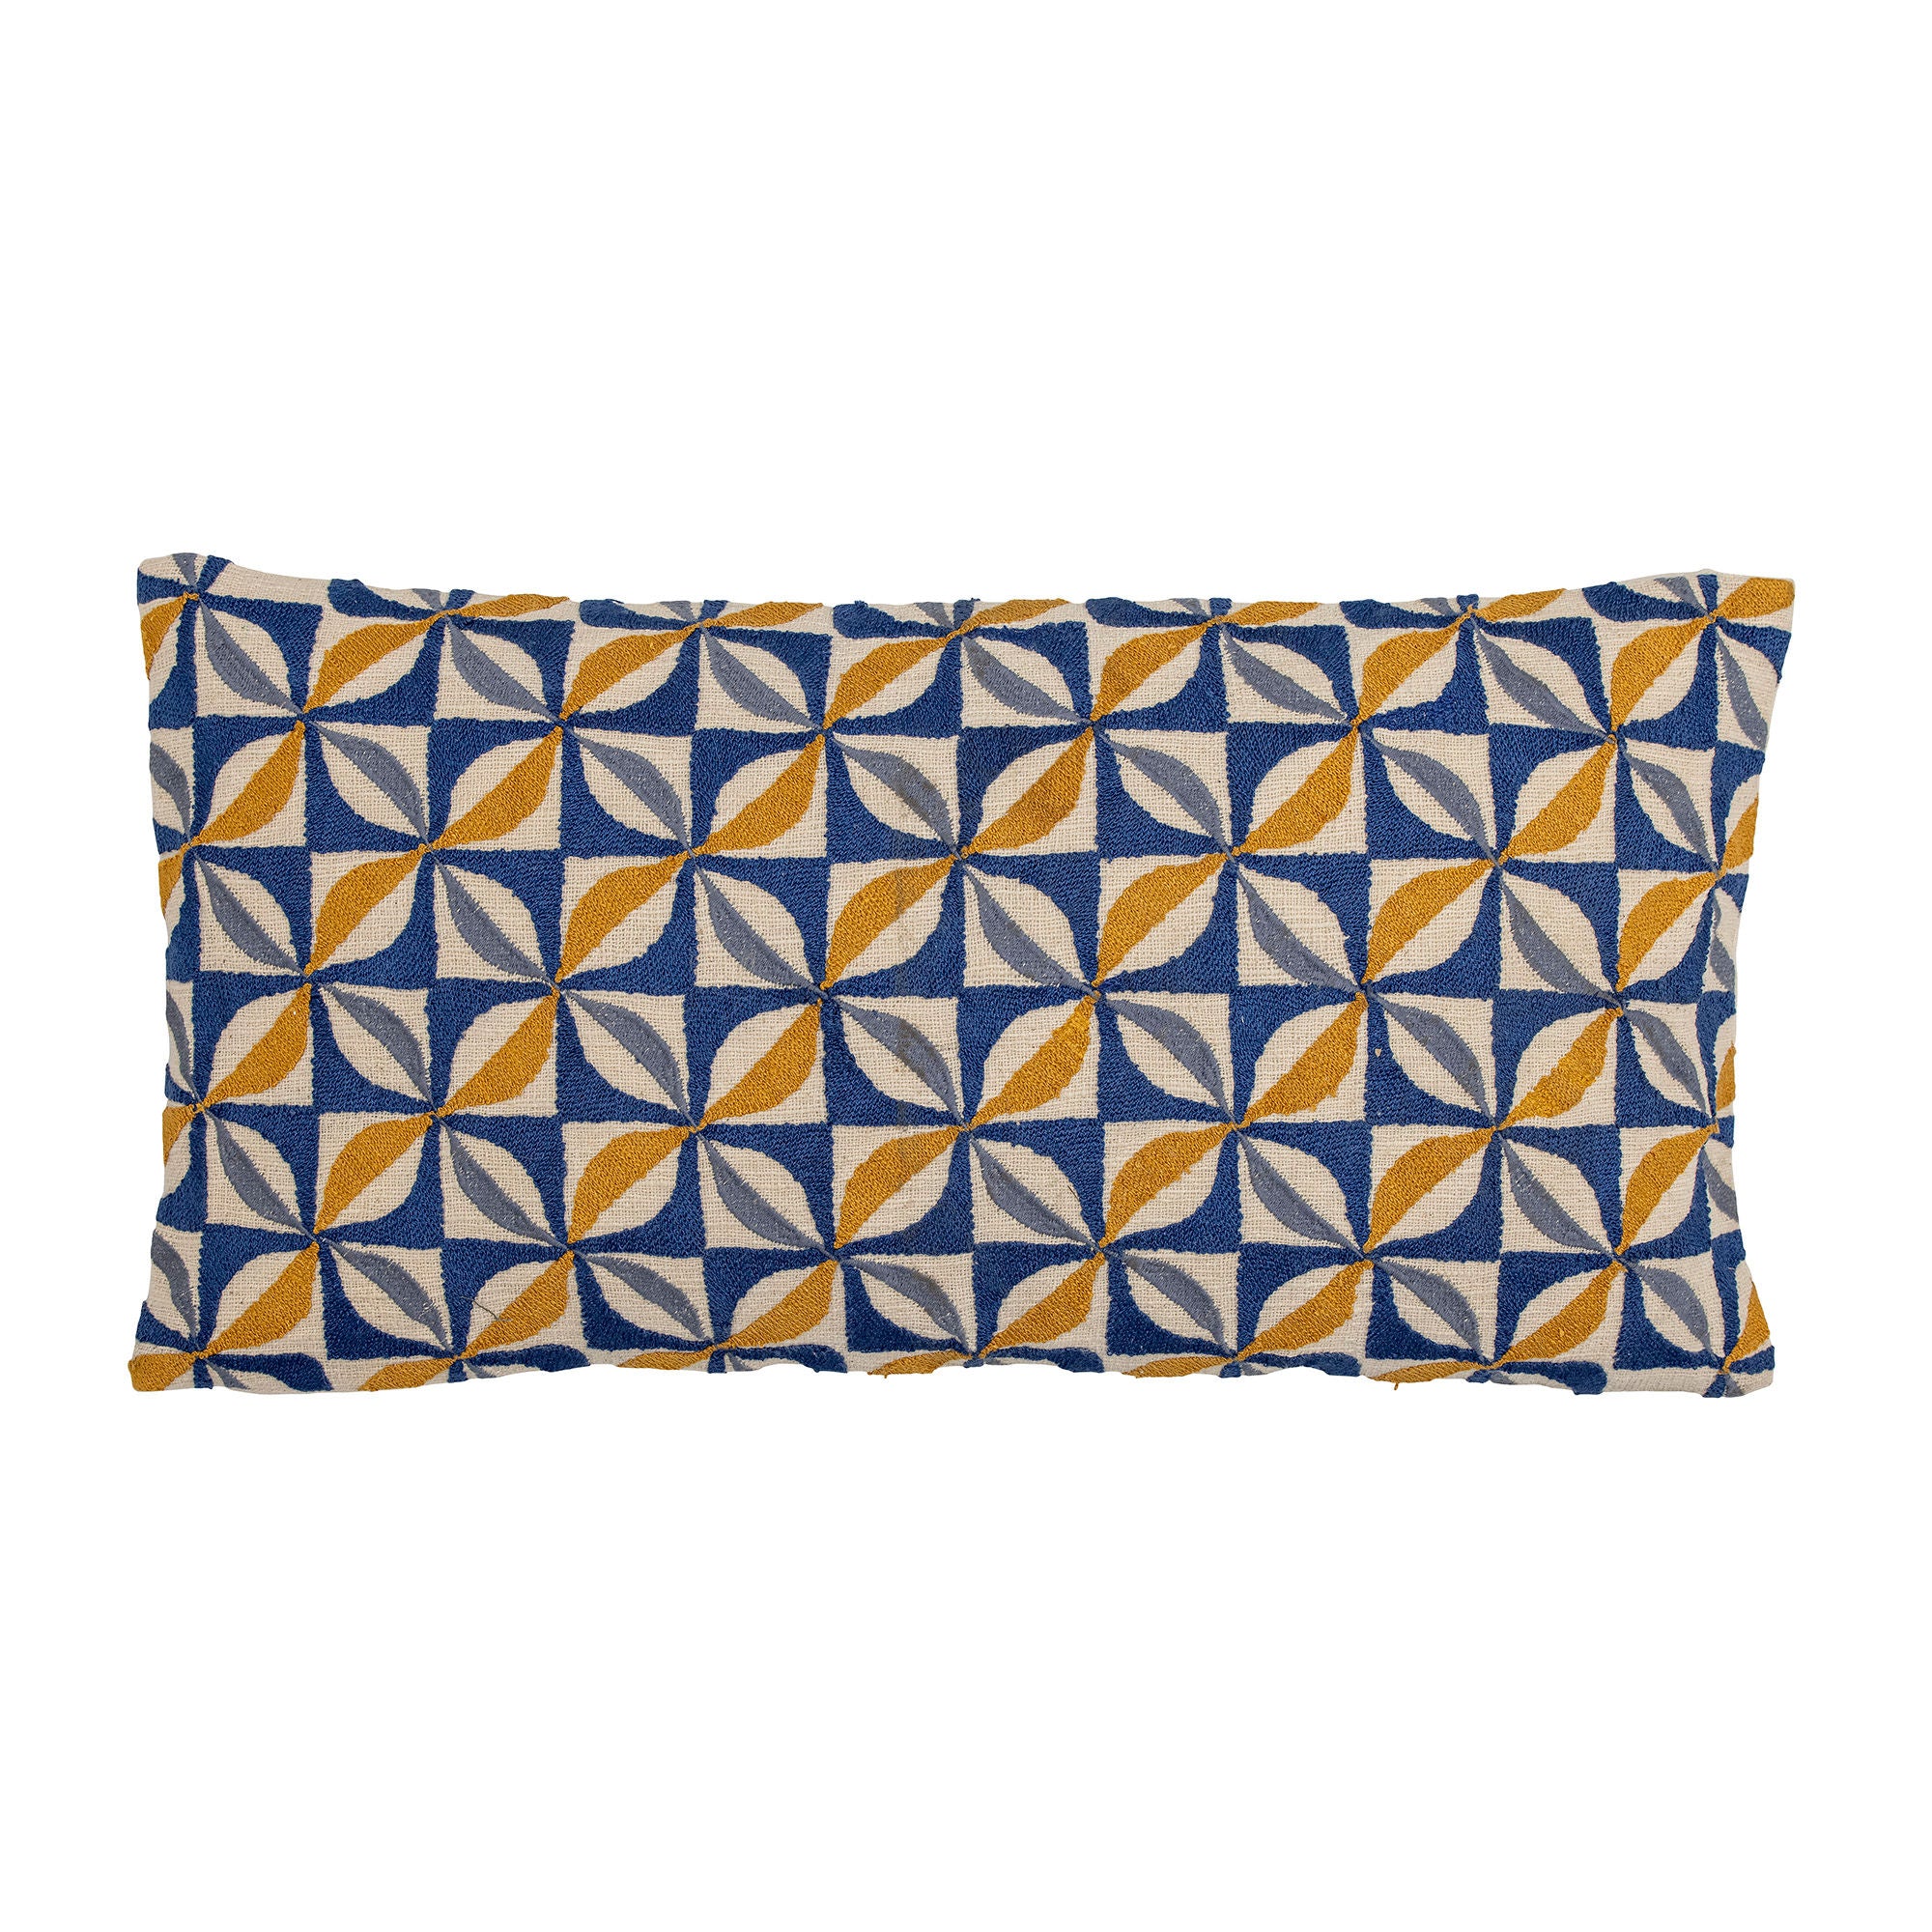 Kissen 'Calia' in Blau aus natürlicher Baumwolle – Längliches Kissen mit einzigartigem gesticktem Muster für eine stilvolle Ergänzung Ihres Sofas oder Sessels.